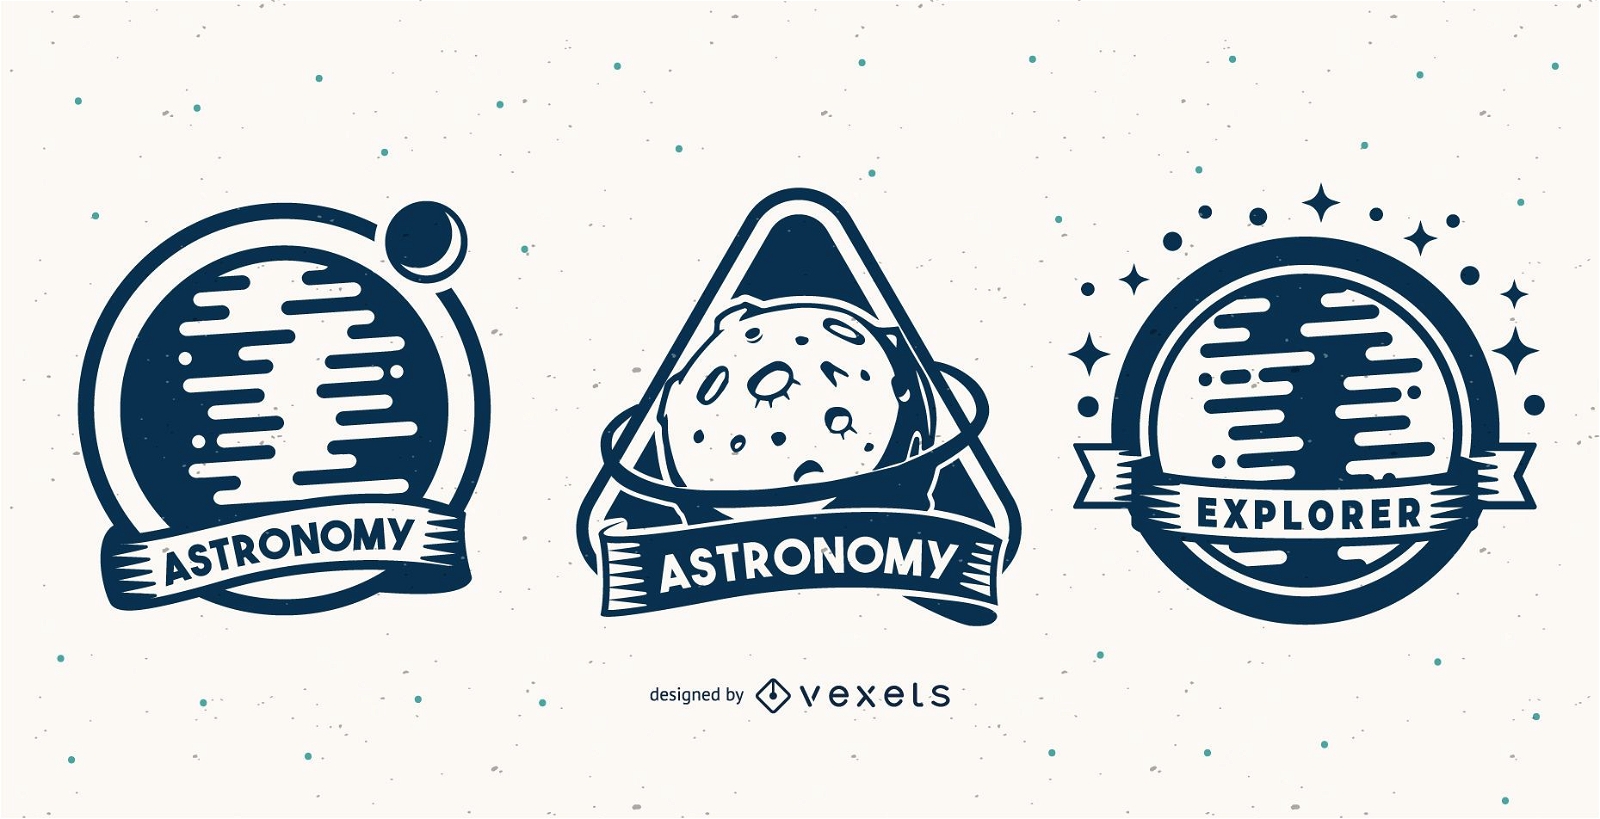 Astronomy badge set